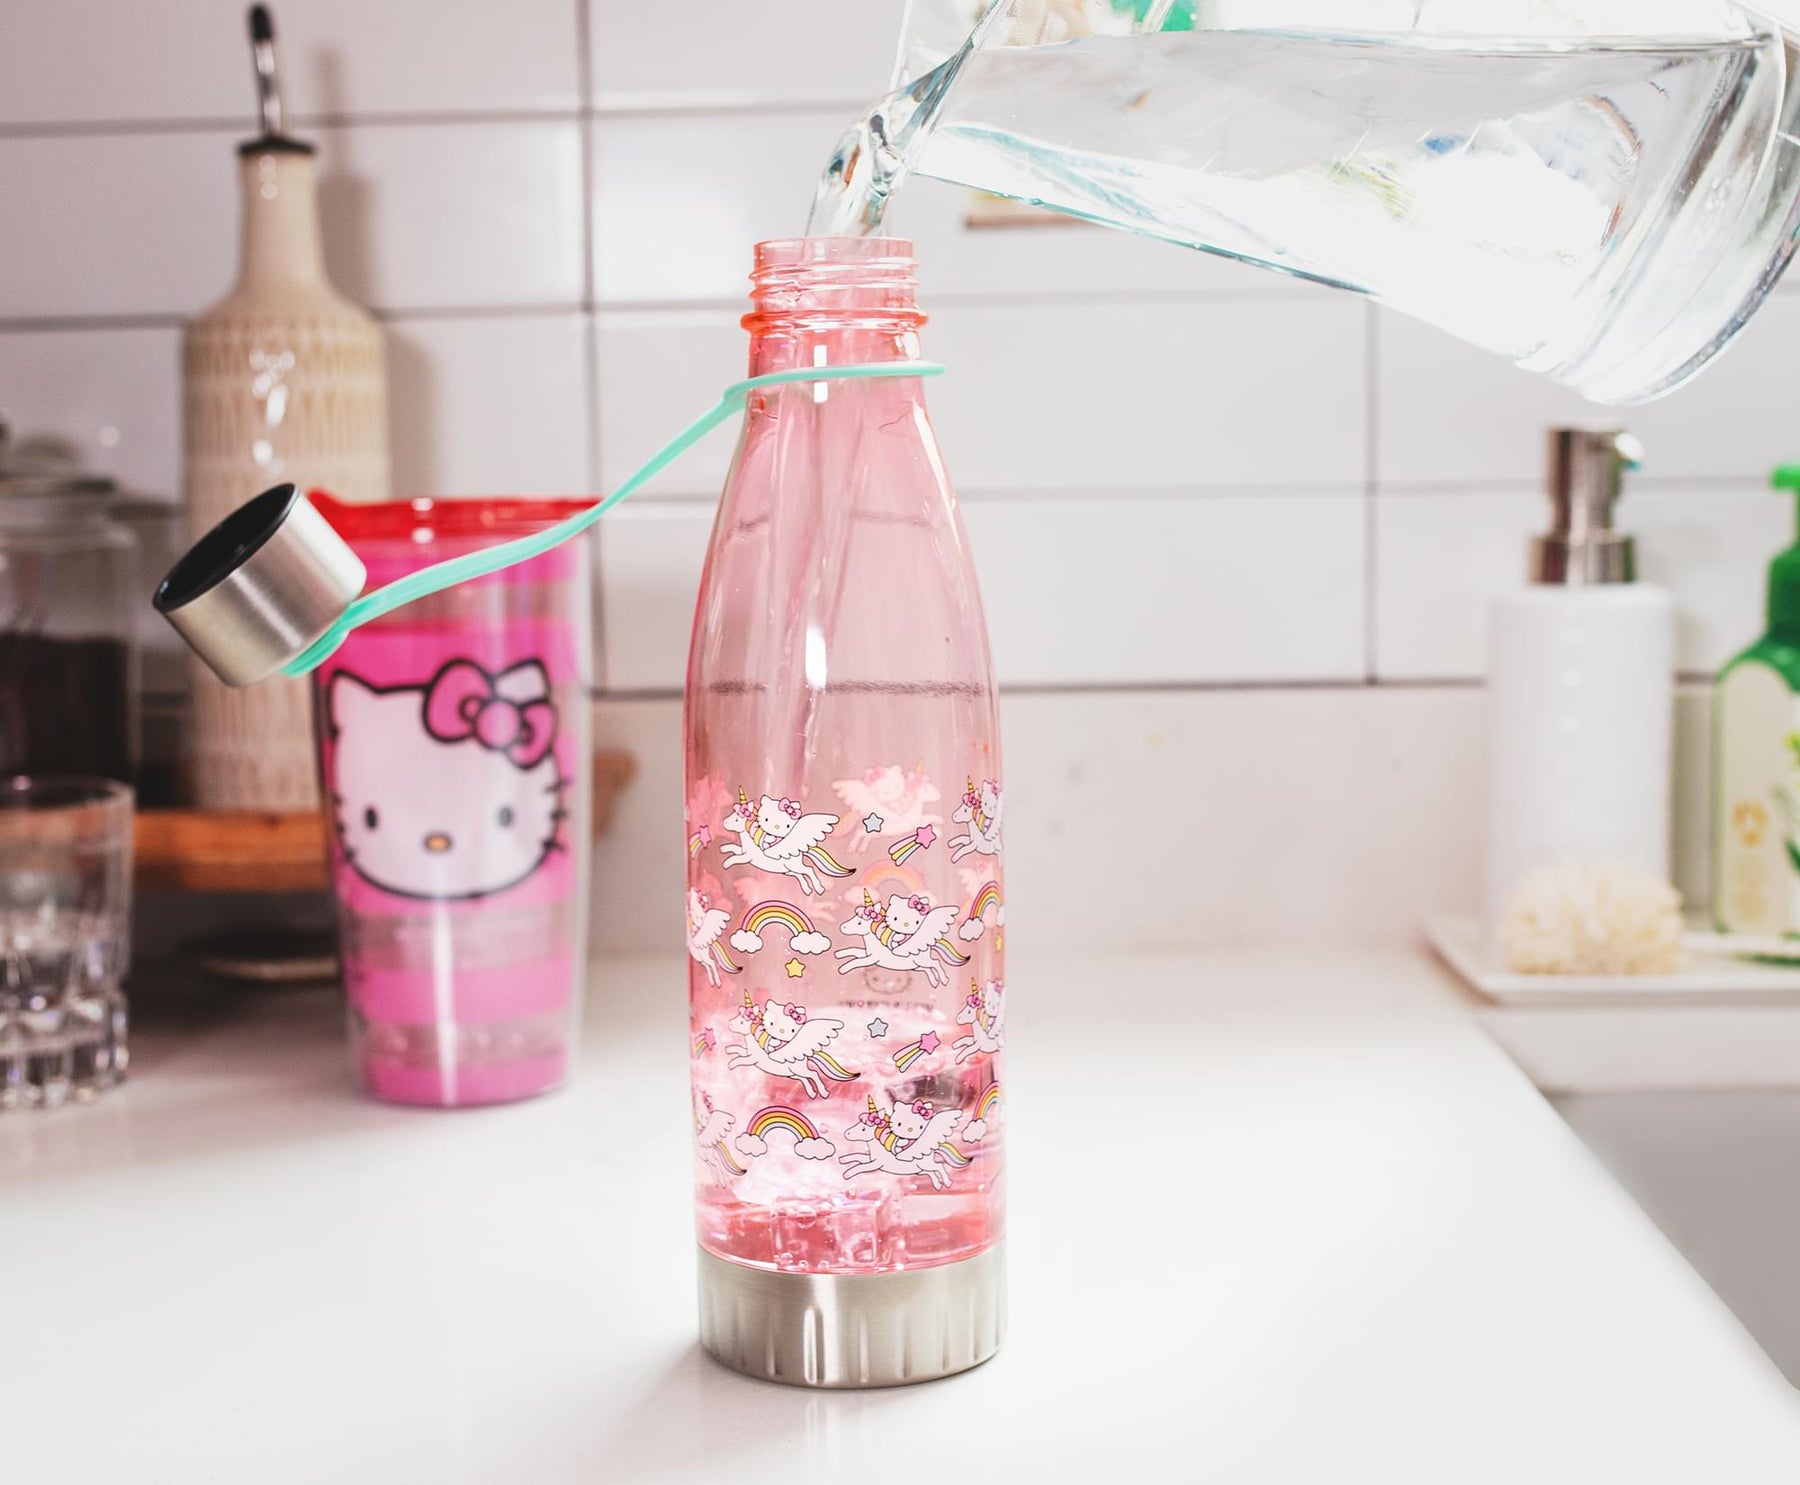 Water Dispenser Bottle Cover- Multicolor